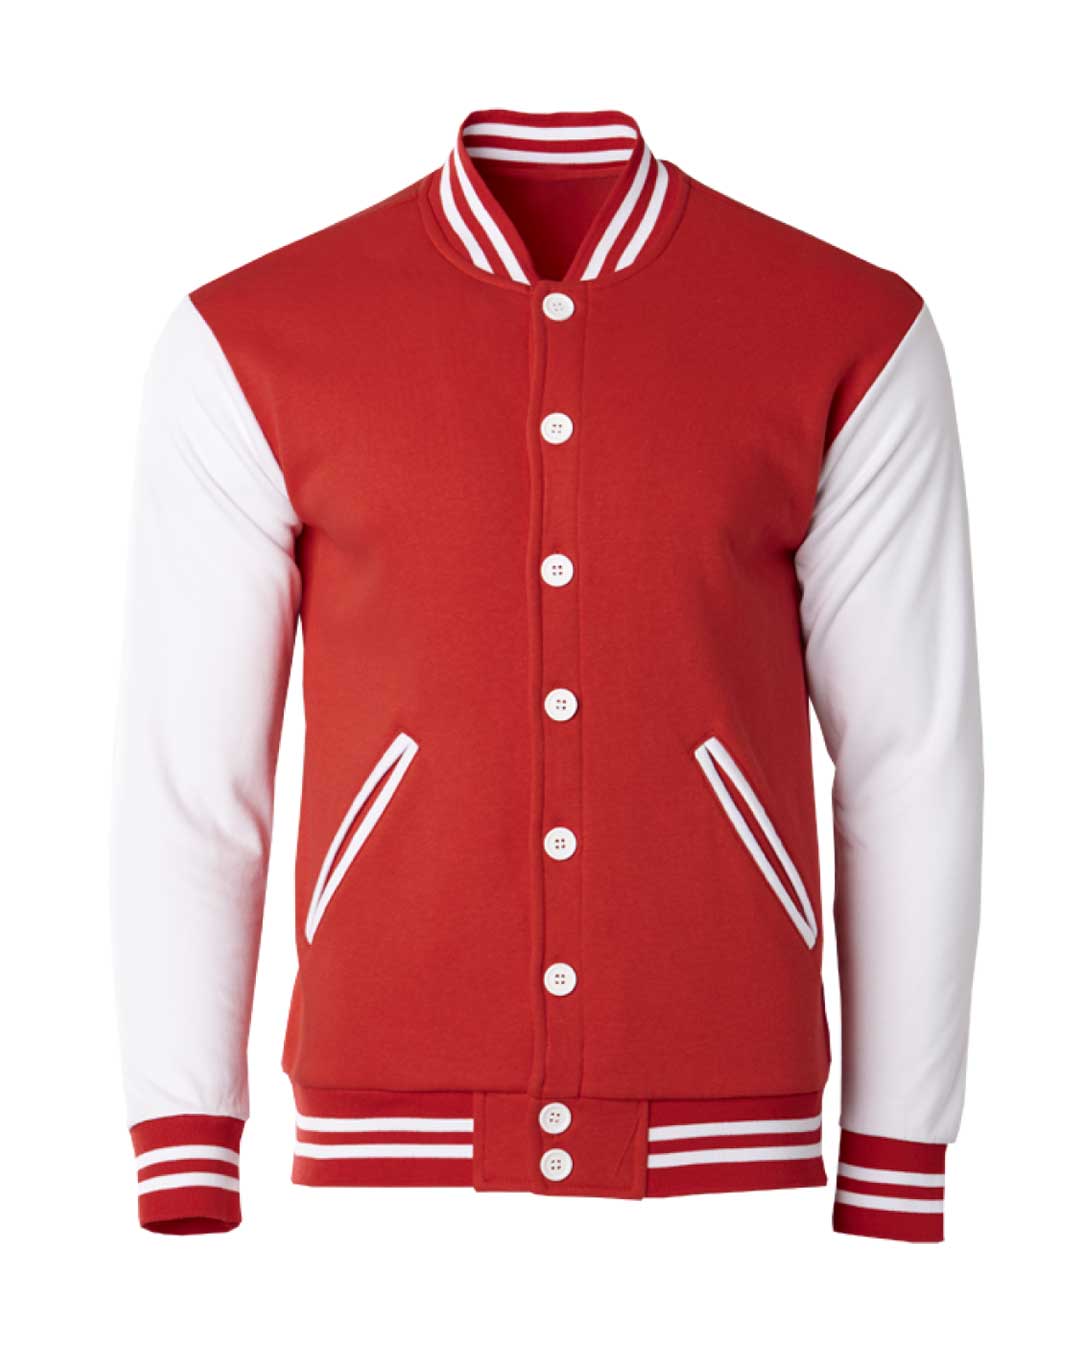 Varsity Jacket Red White